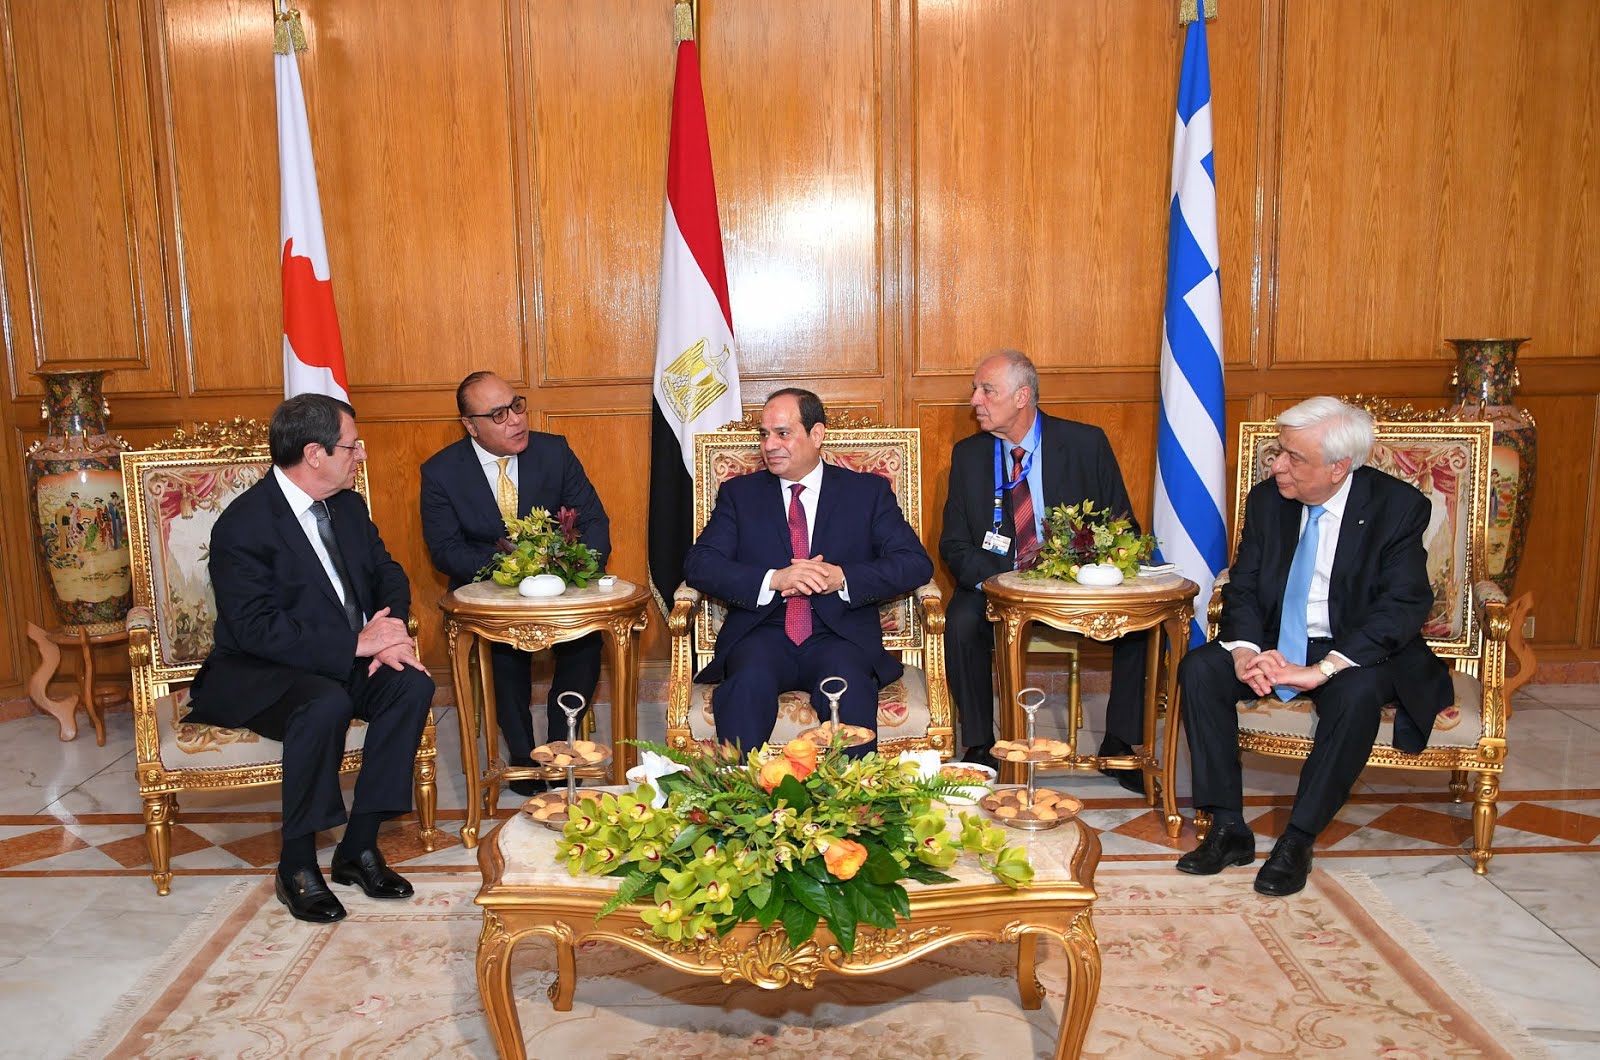 مصر وقبرص واليونان يطلقون مبادرة (العودة الى الجذور) لتوثيق العلاقات